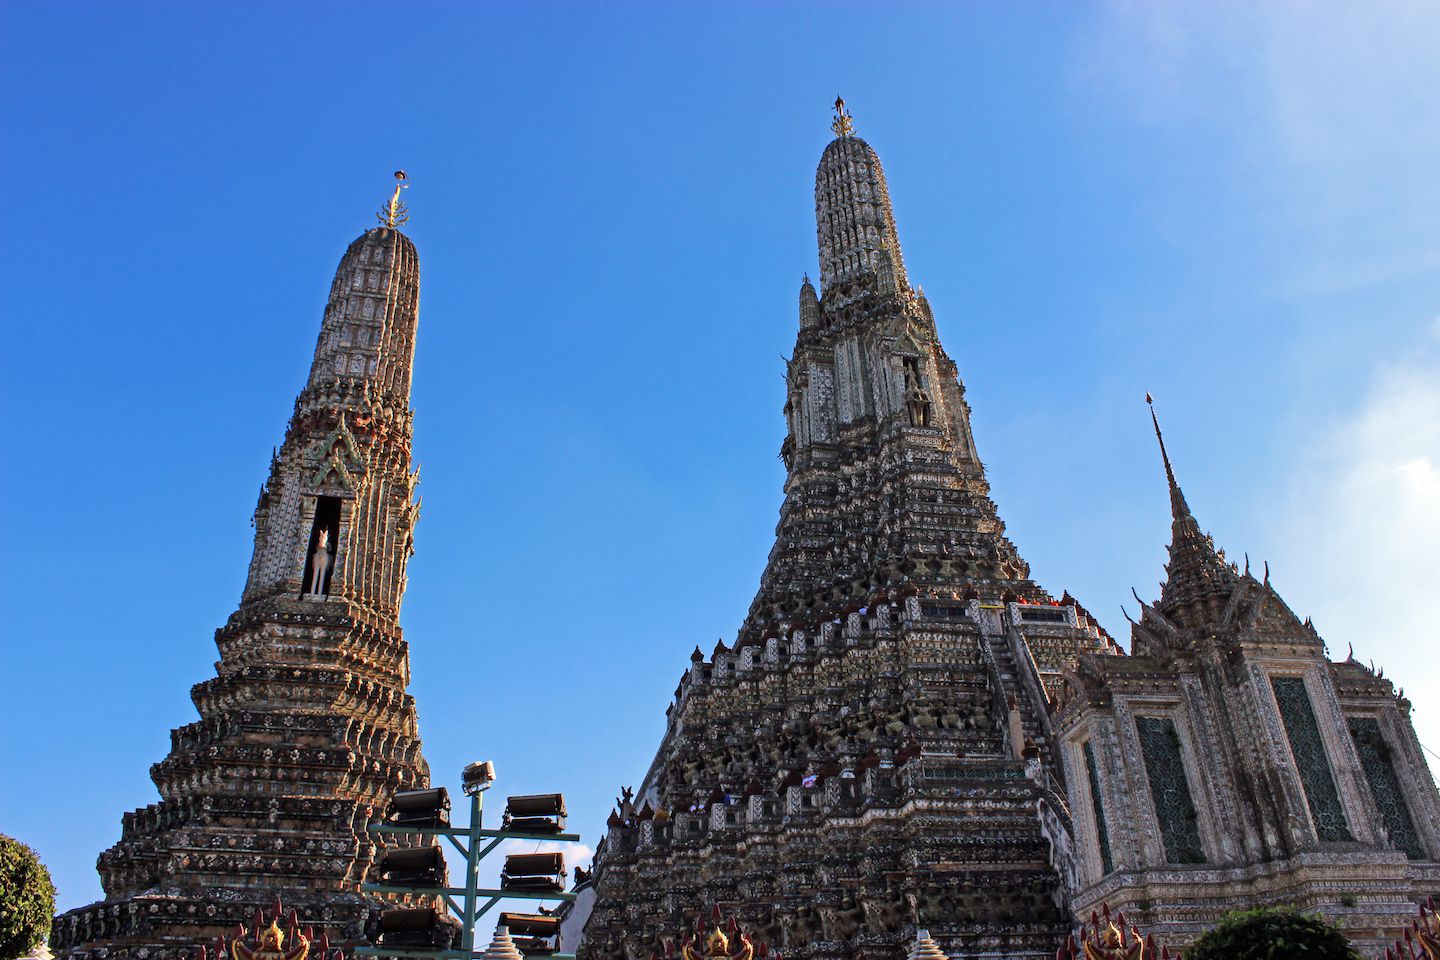 Chedis at Wat Arun in Bangkok